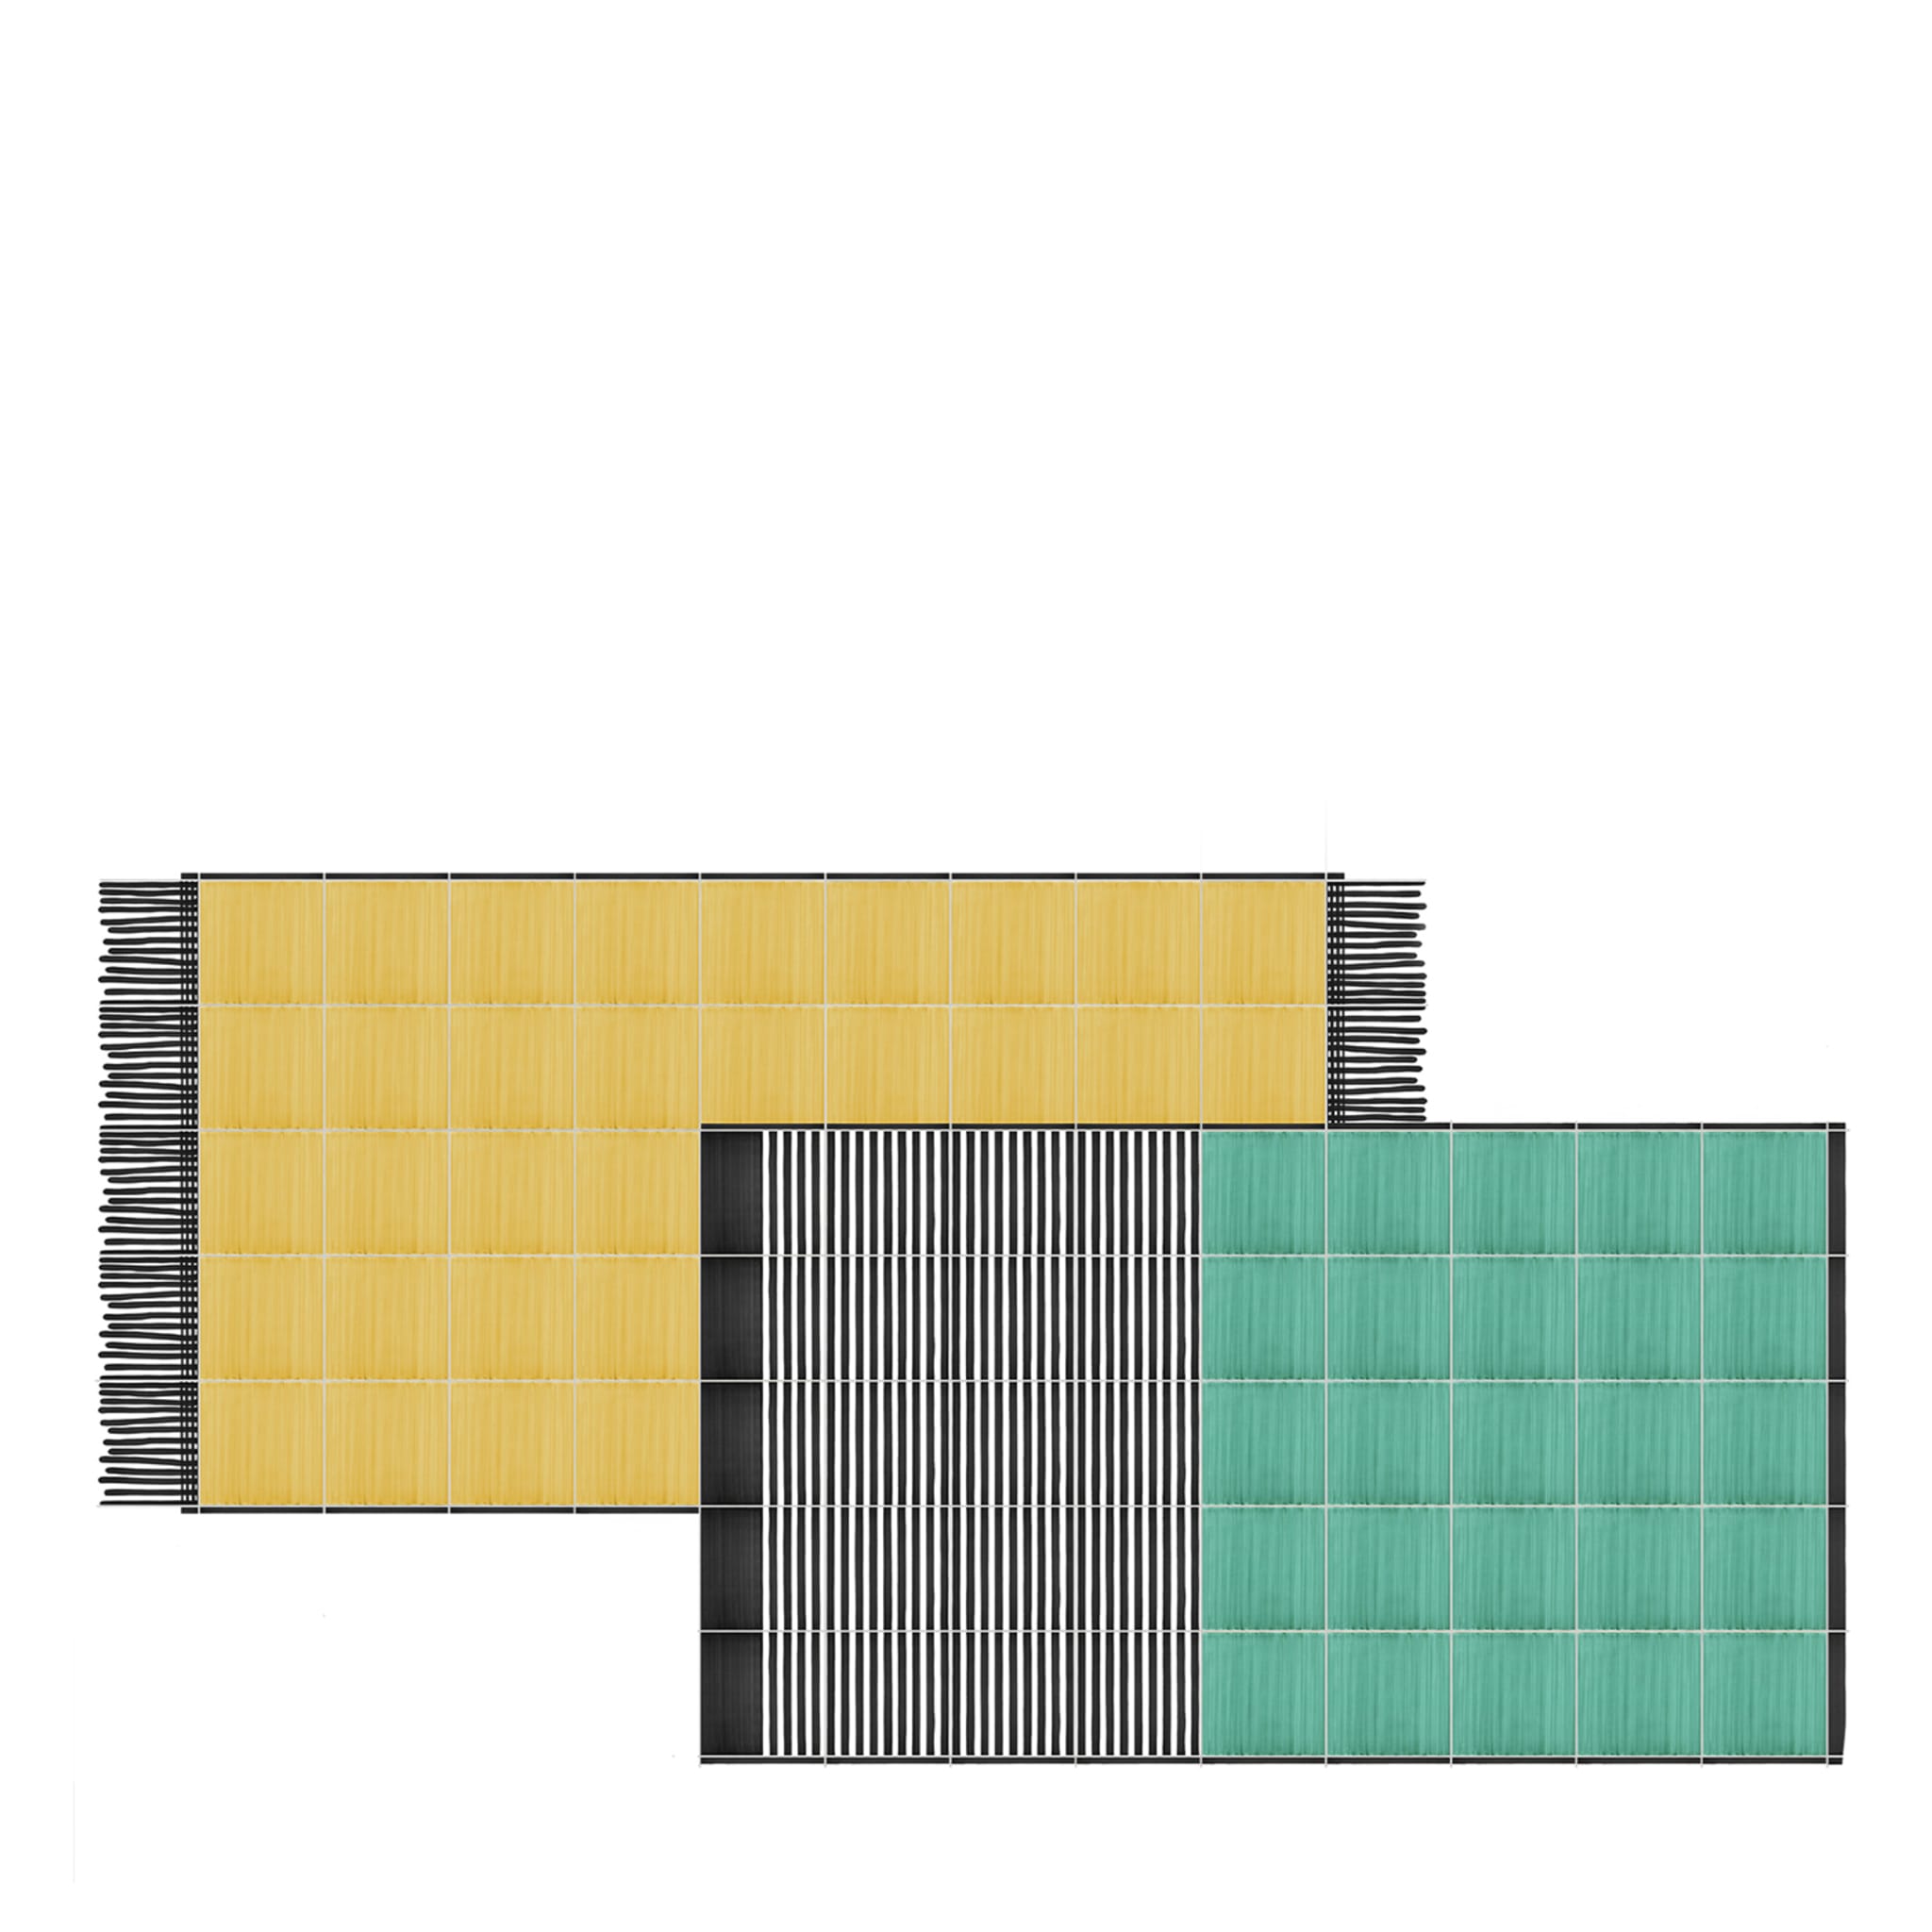 Teppich Grün und Gelb Keramische Komposition von Giuliano Andrea dell'Uva 300 x 180 - Hauptansicht